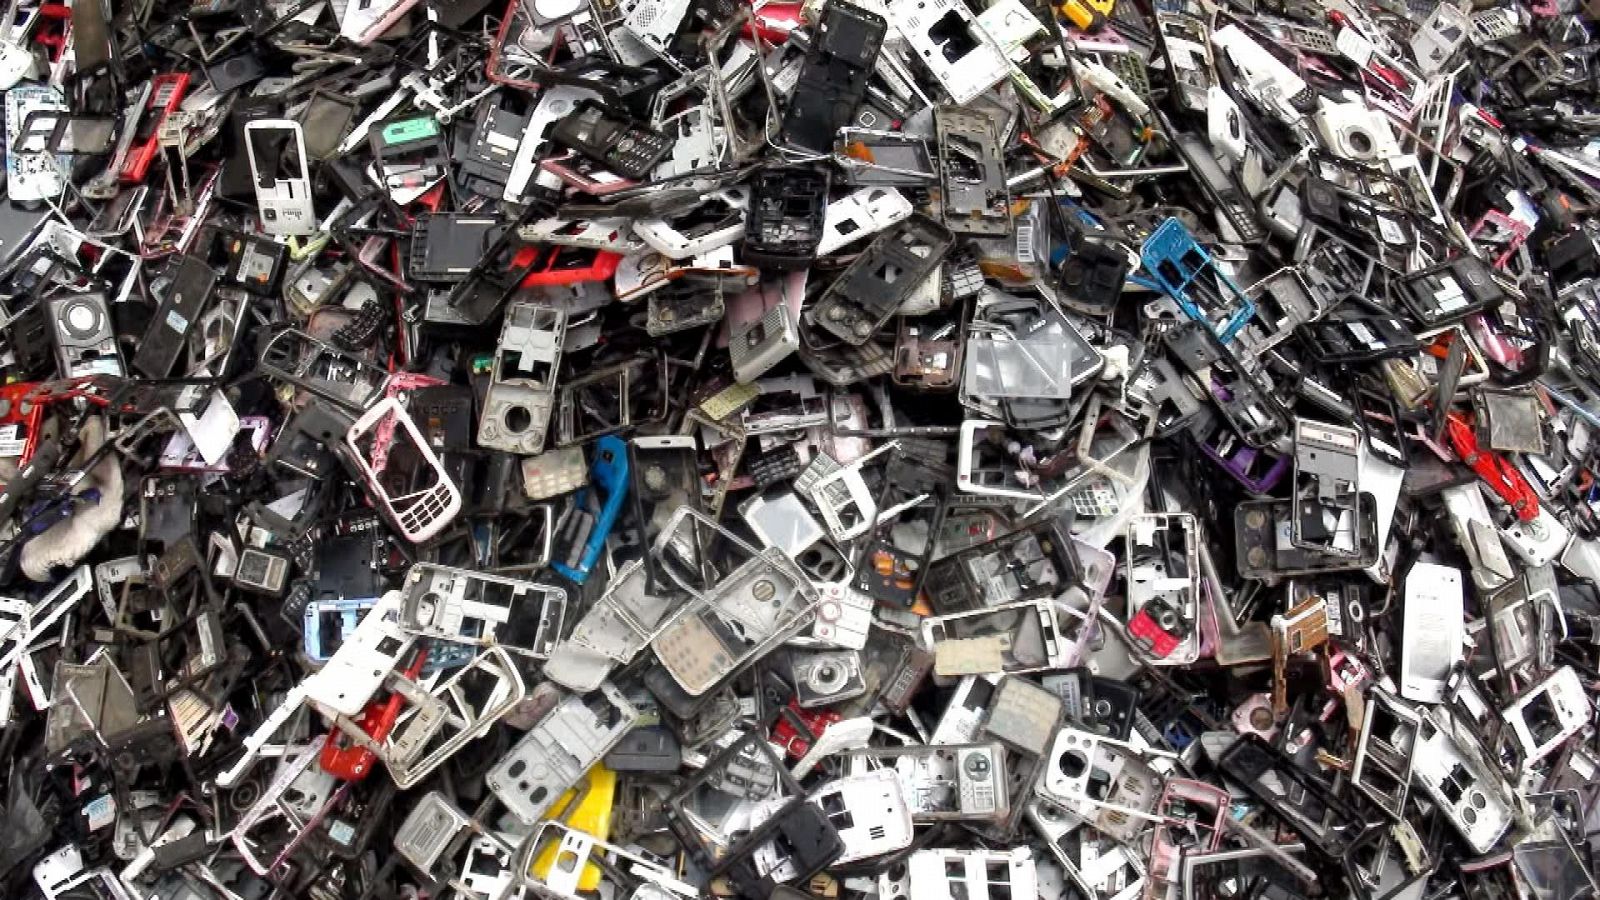 Imagen de carcasas móviles del documental "La tragedia electrónica".